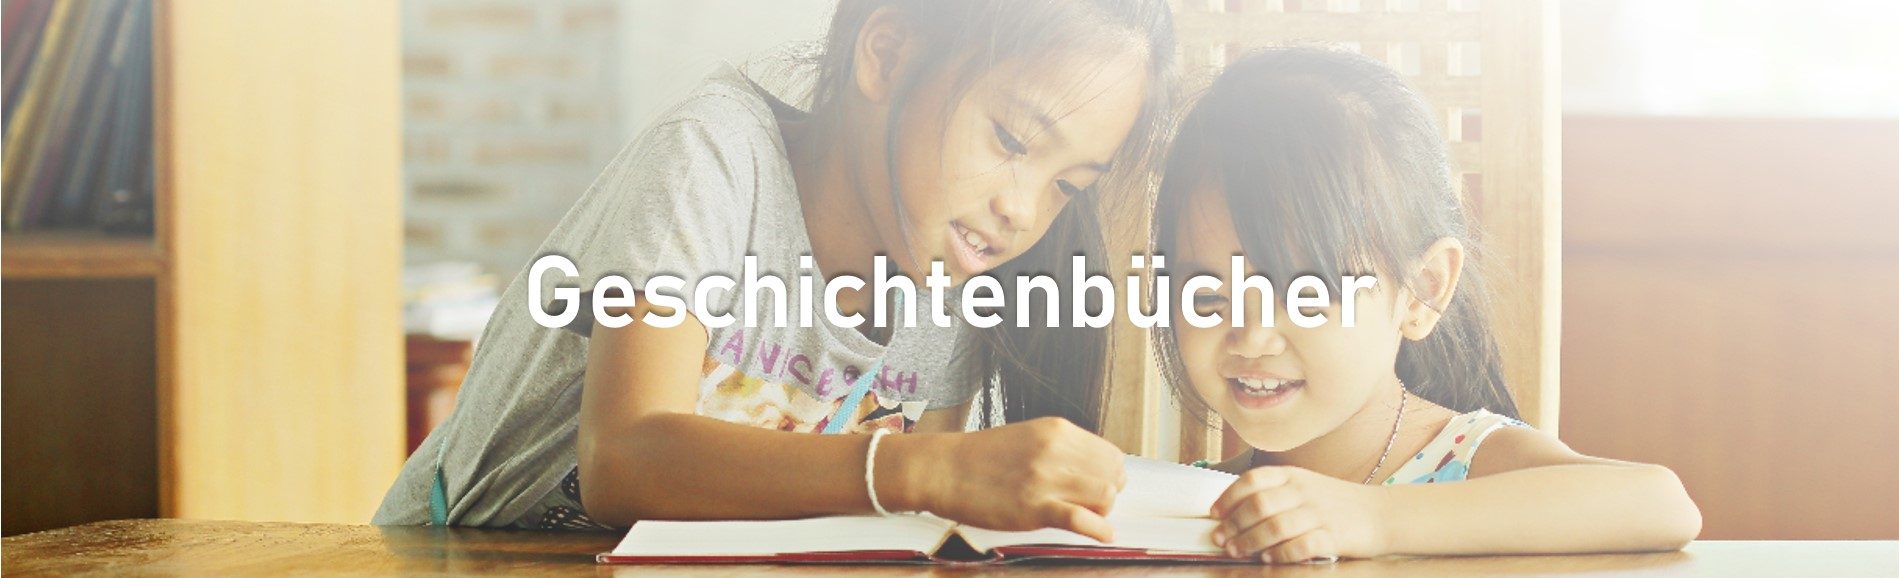 Top-Banner_Kids_Geschichtenbucher_Statisch